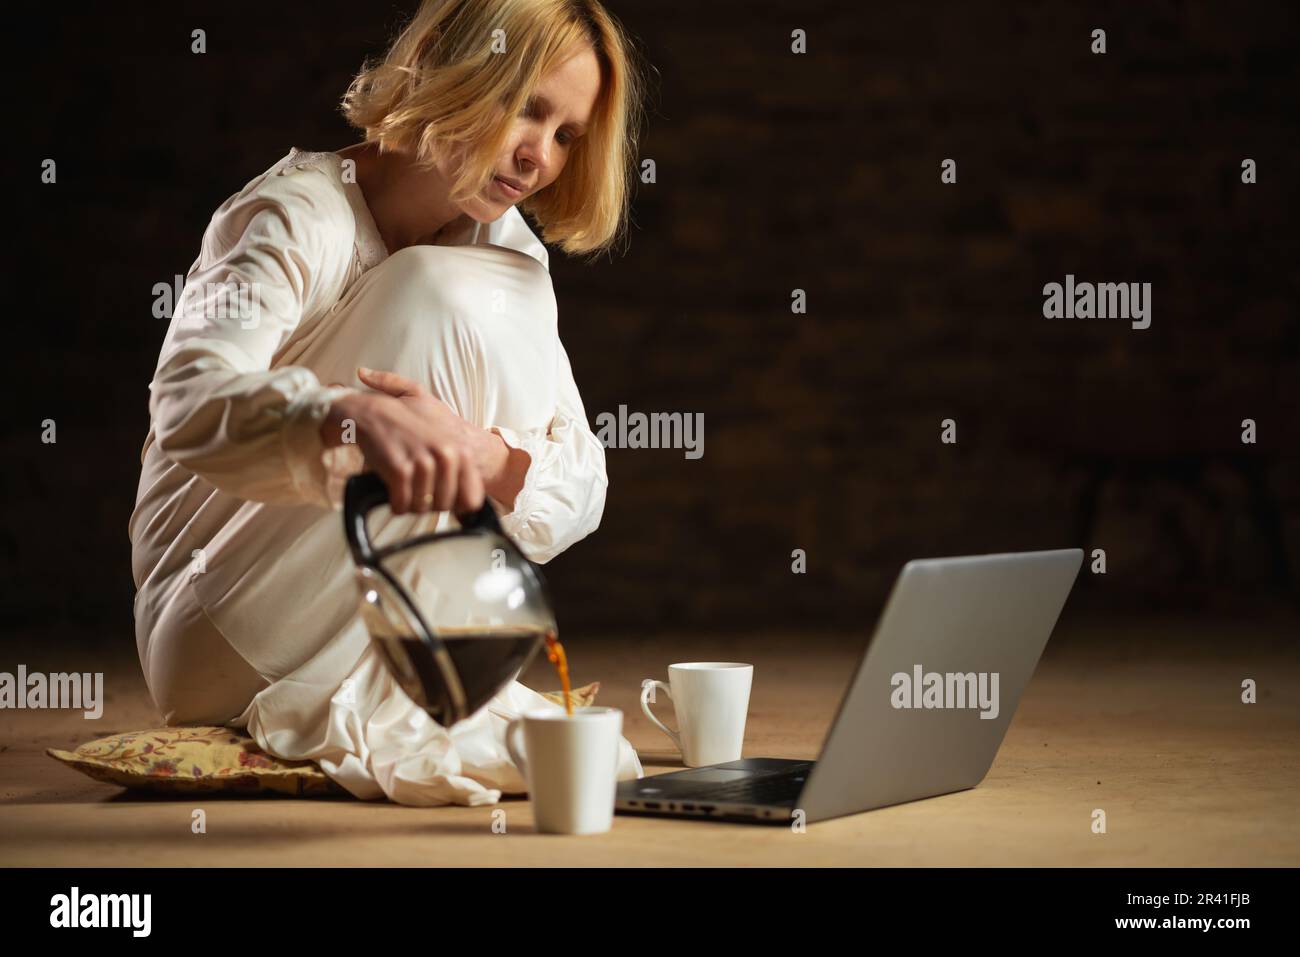 Eine Frau gießt Kaffee ein, während sie vor einem Laptop sitzt. Leerer Raum, dunkler Hintergrund. Deadline, Recycling, Fleiß-Freelancer-Konzept. Stockfoto